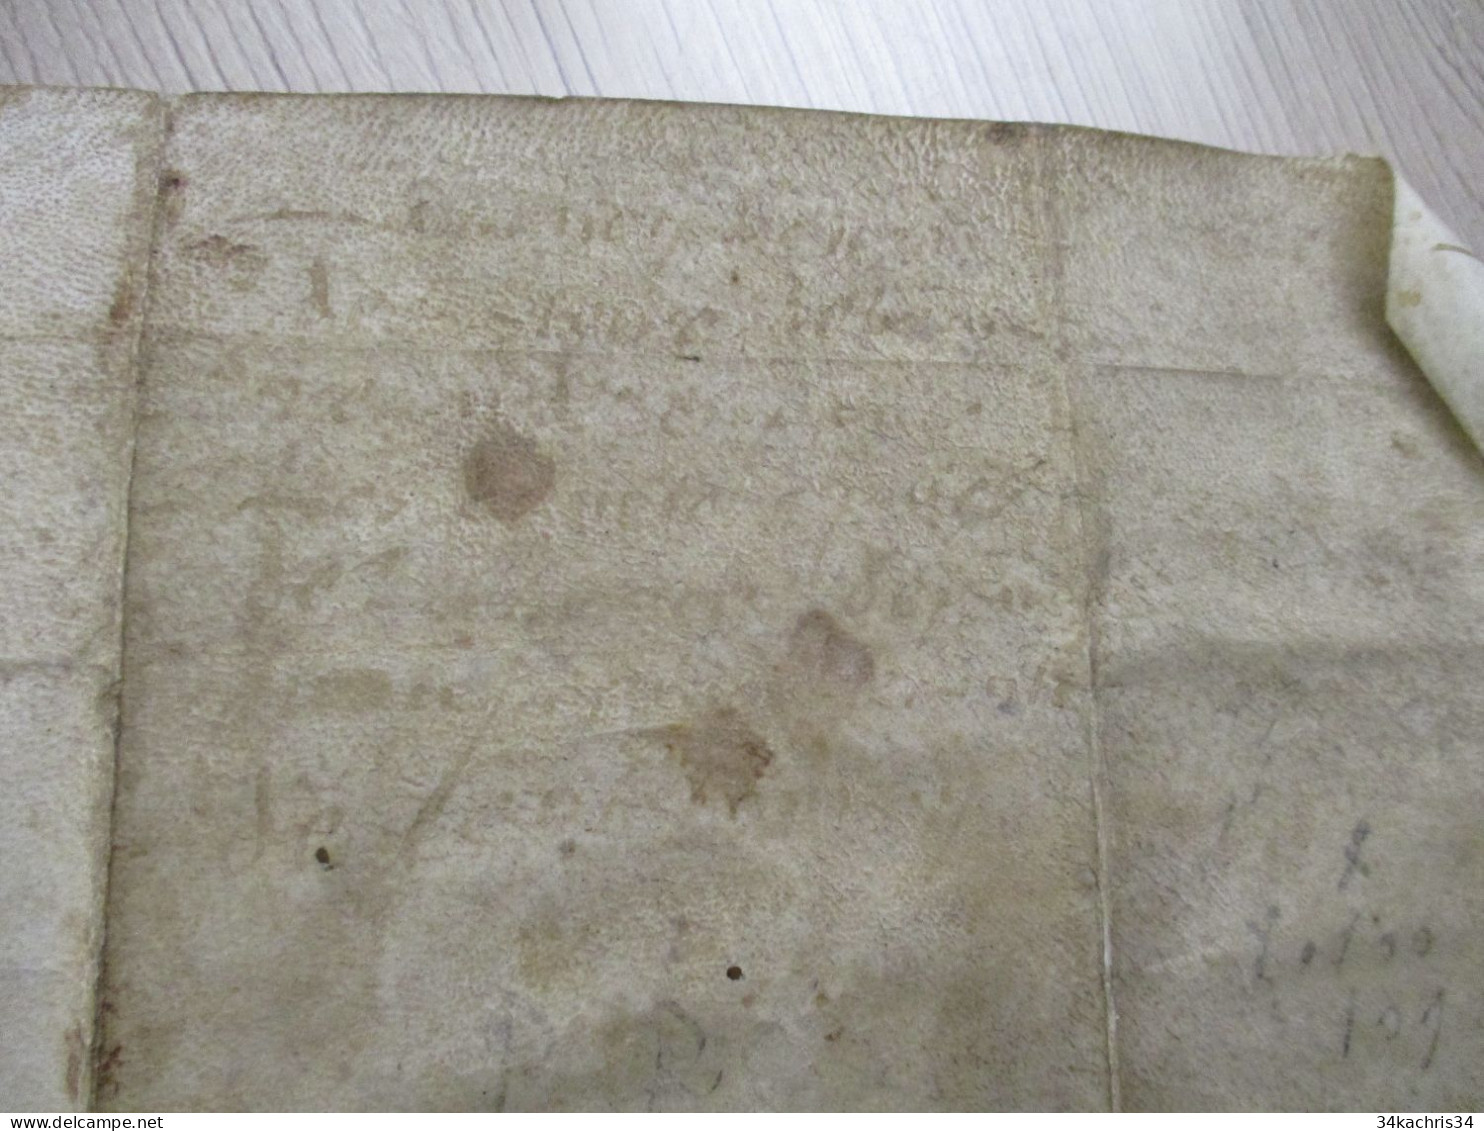 Pièce signée parchemin 1572 Claude Beauvilliers châtellerie Saint Aignan en Berry acte à traduire supplication